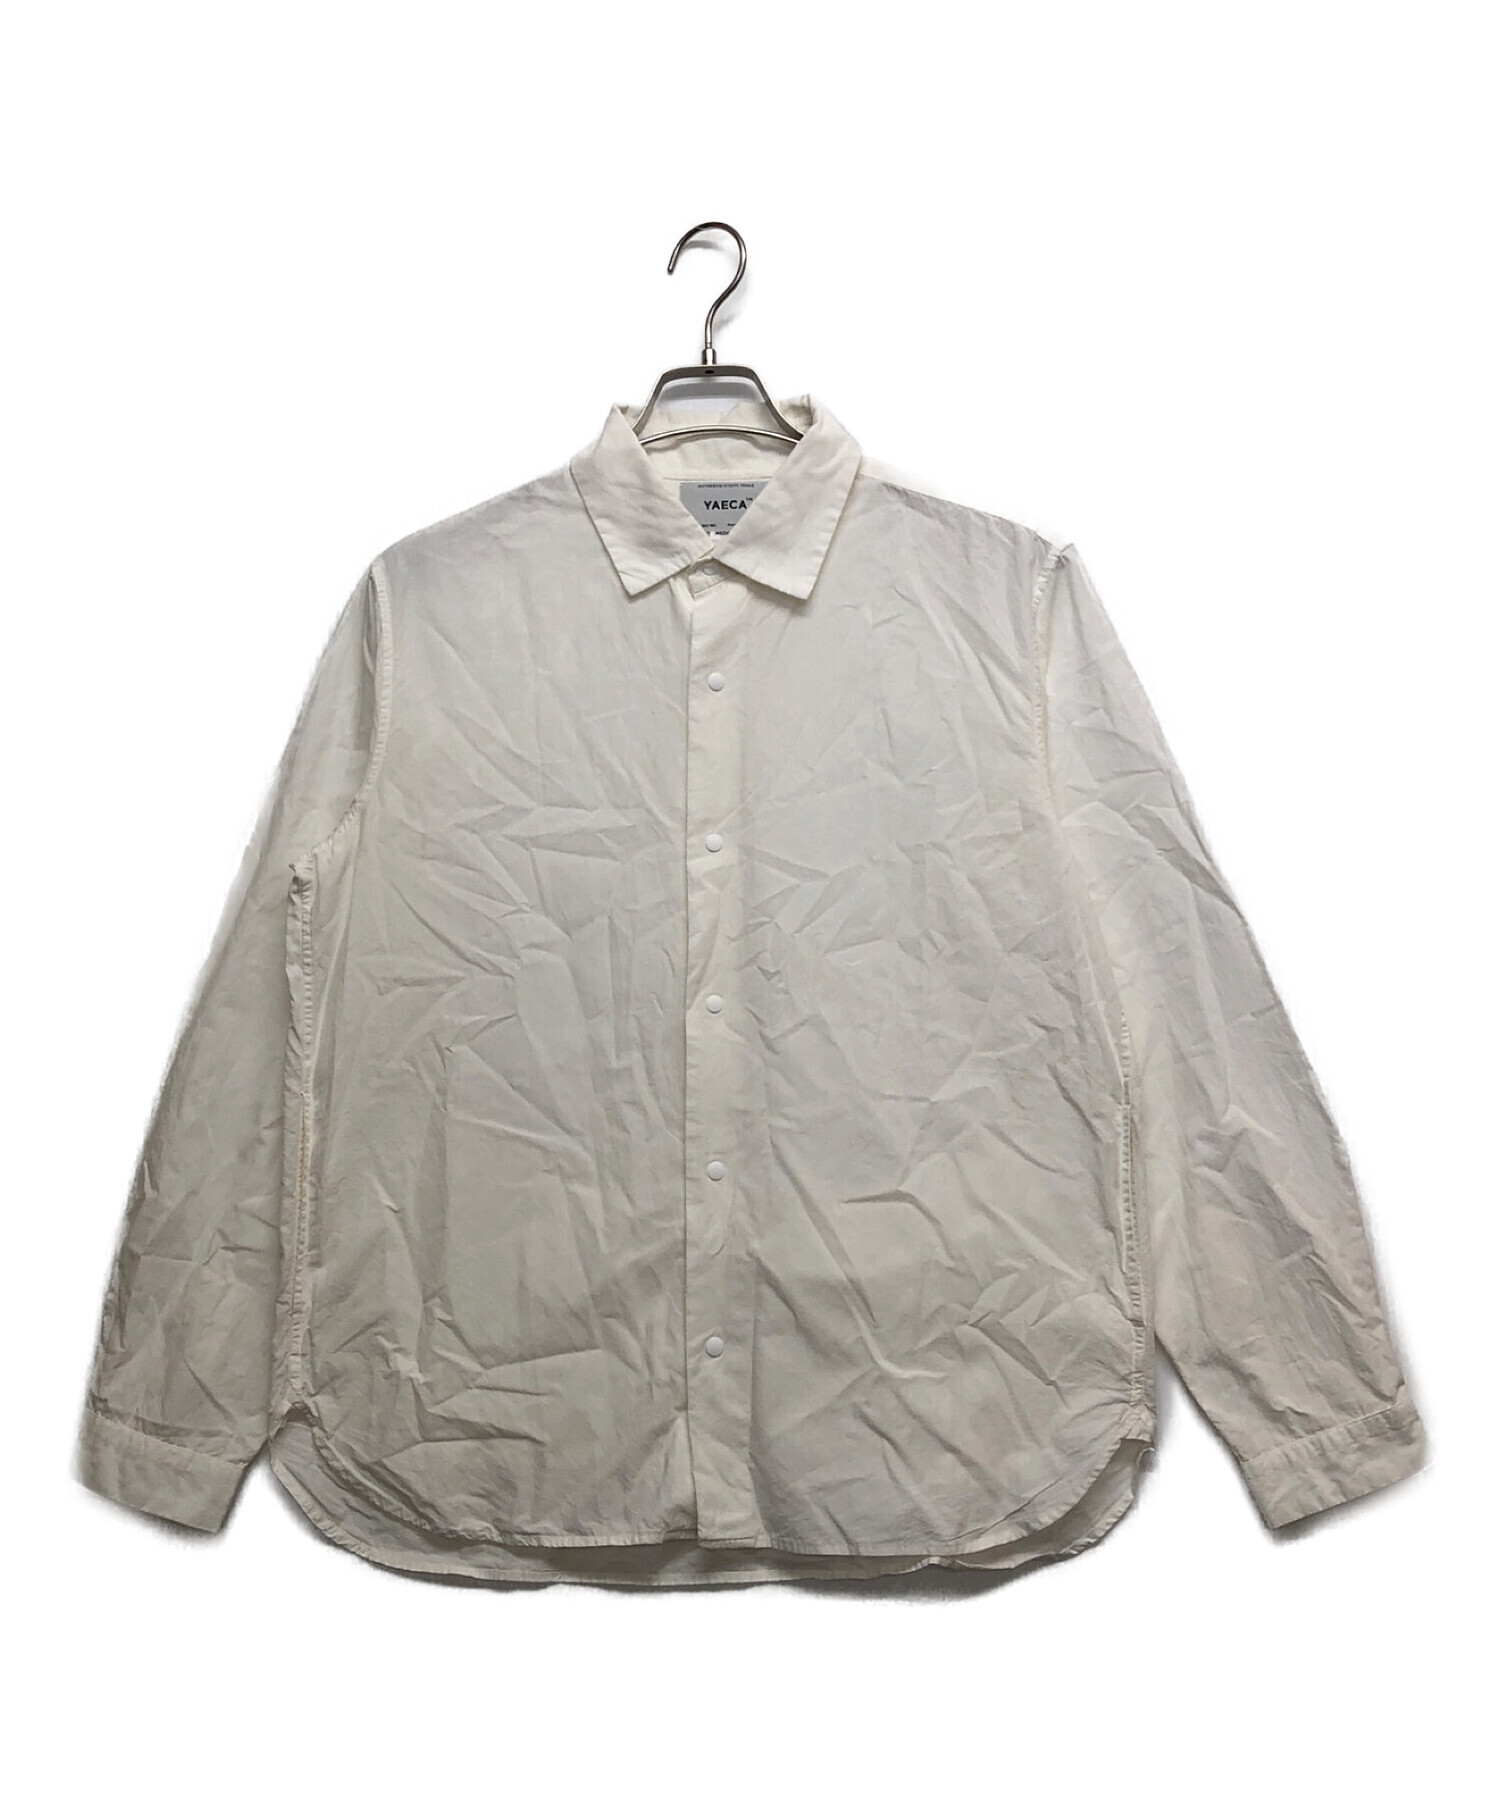 YAECA (ヤエカ) スナップボタンシャツ ホワイト サイズ:M